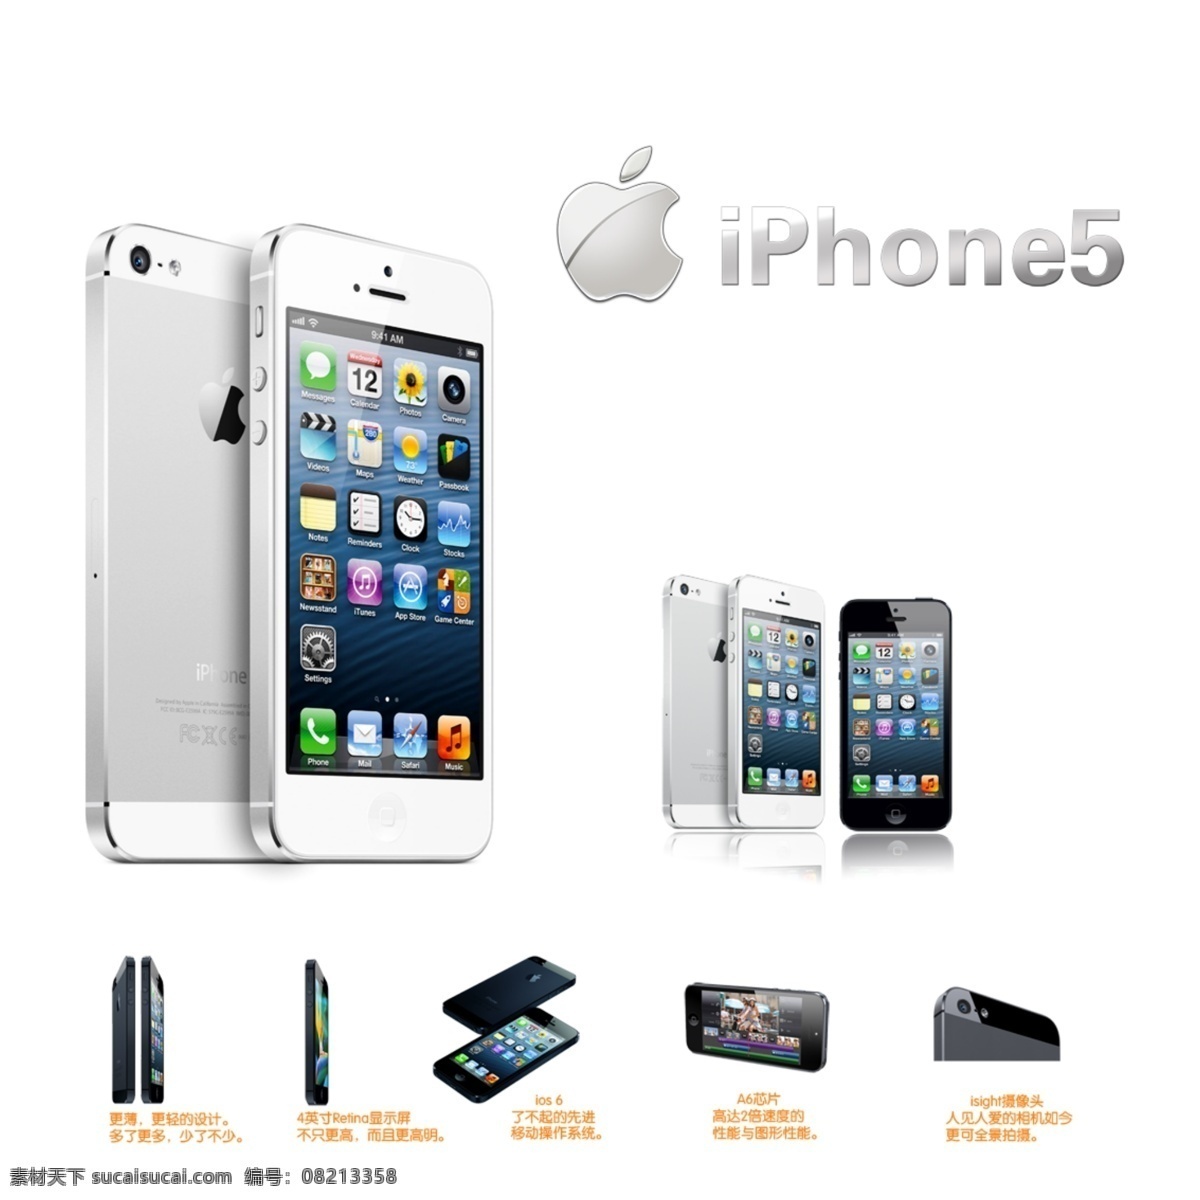 苹果5 iphone5 苹果五代 苹果手机 美国苹果 广告设计模板 源文件